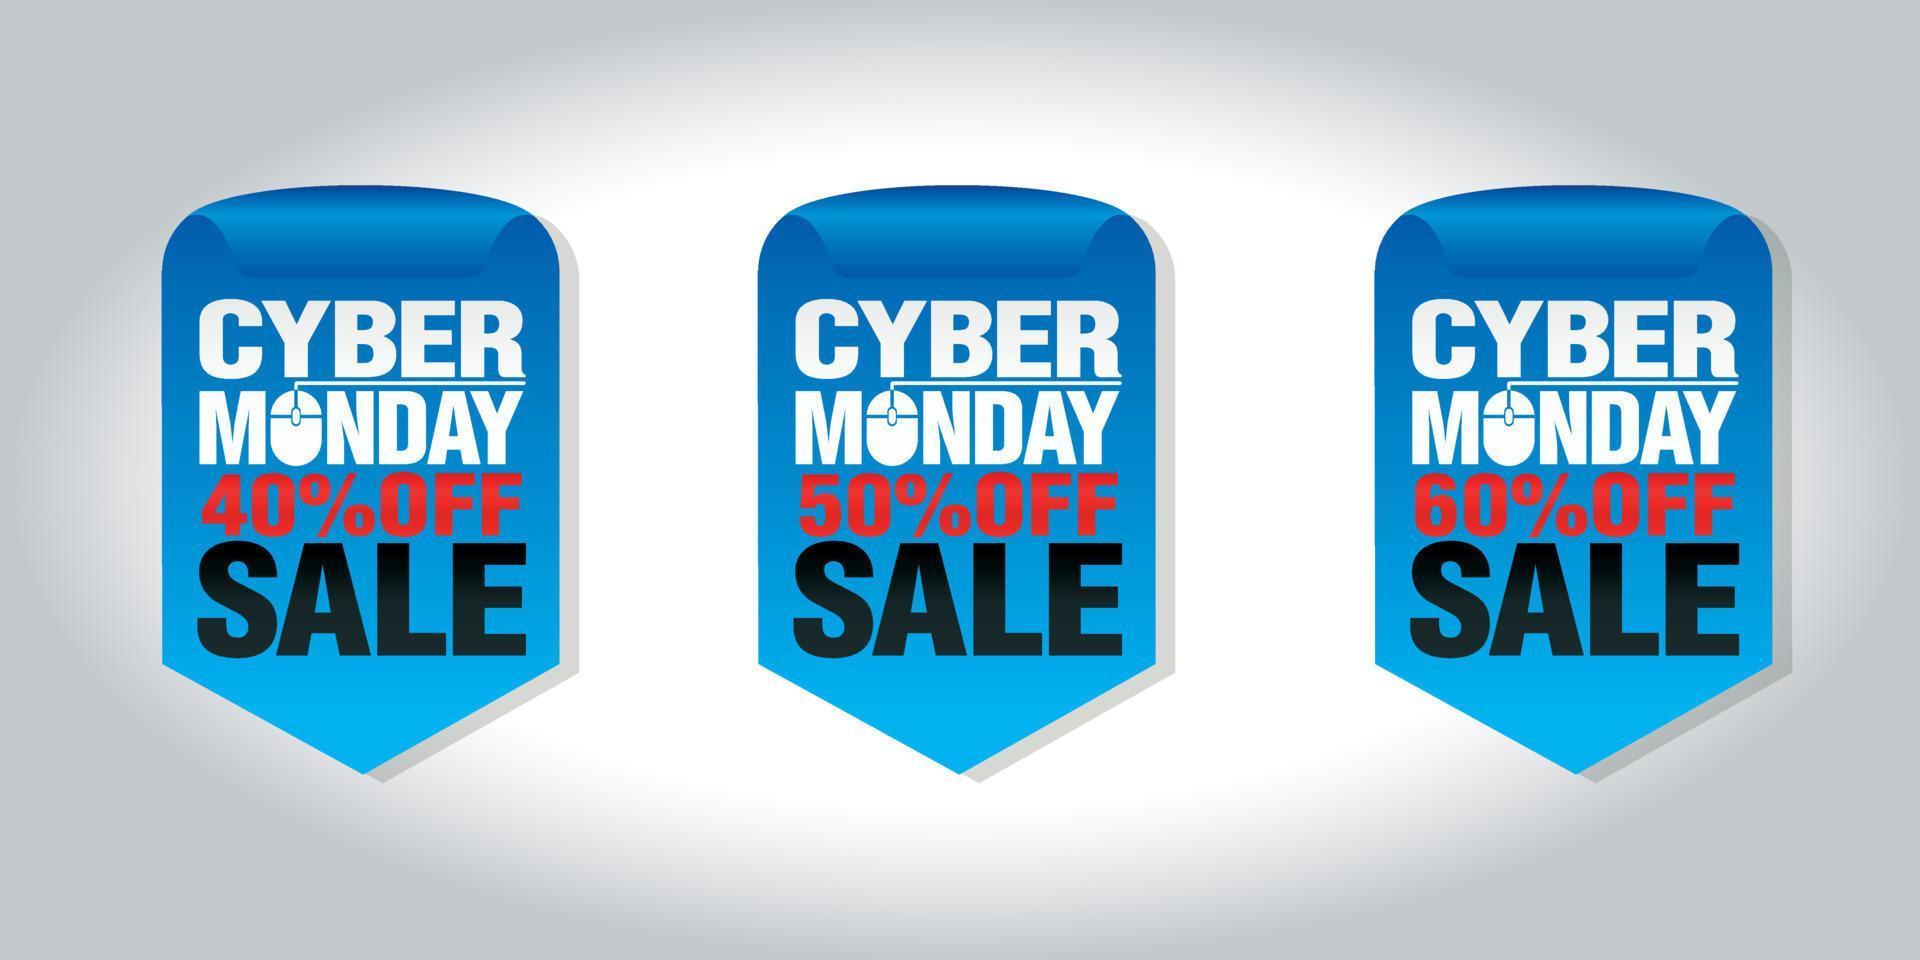 venda de segunda-feira cibernética conjunto de crachás 40, 50, 60 de desconto vetor